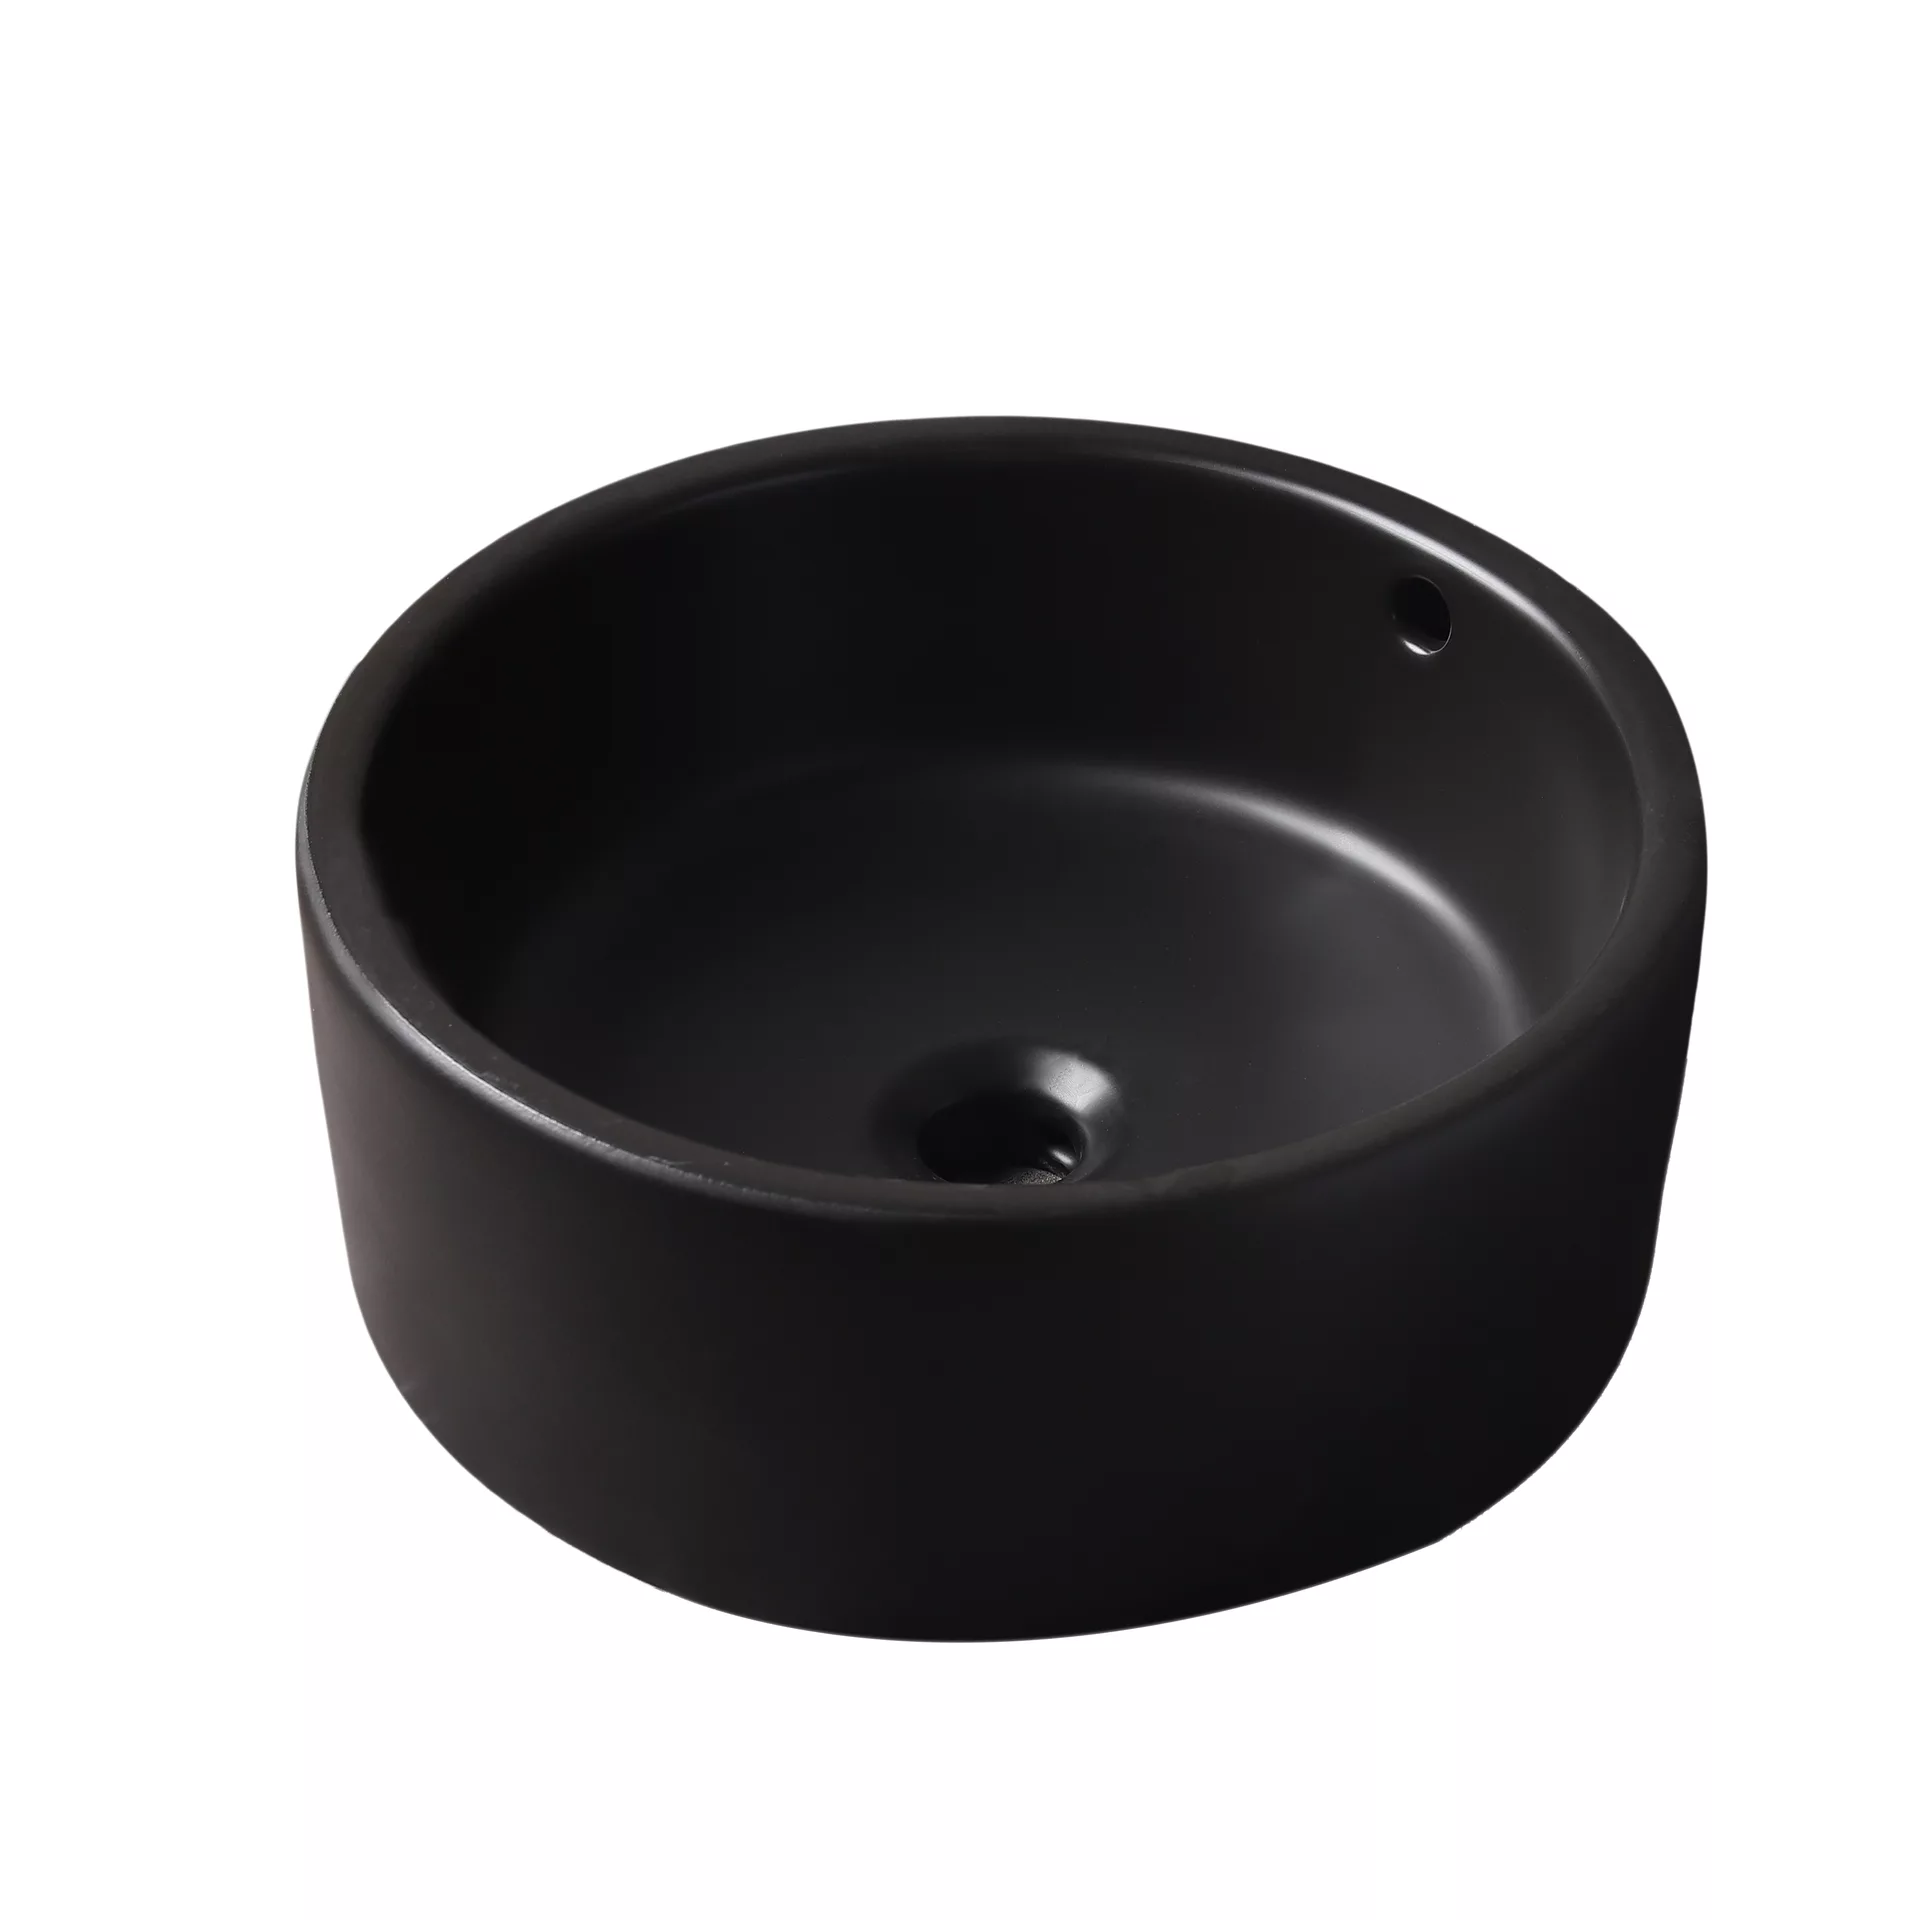 Накладная черная раковина для ванной GiD N9130bg керамическая раковина накладная bond s57 388 квадратная 38 38 13 5см черная